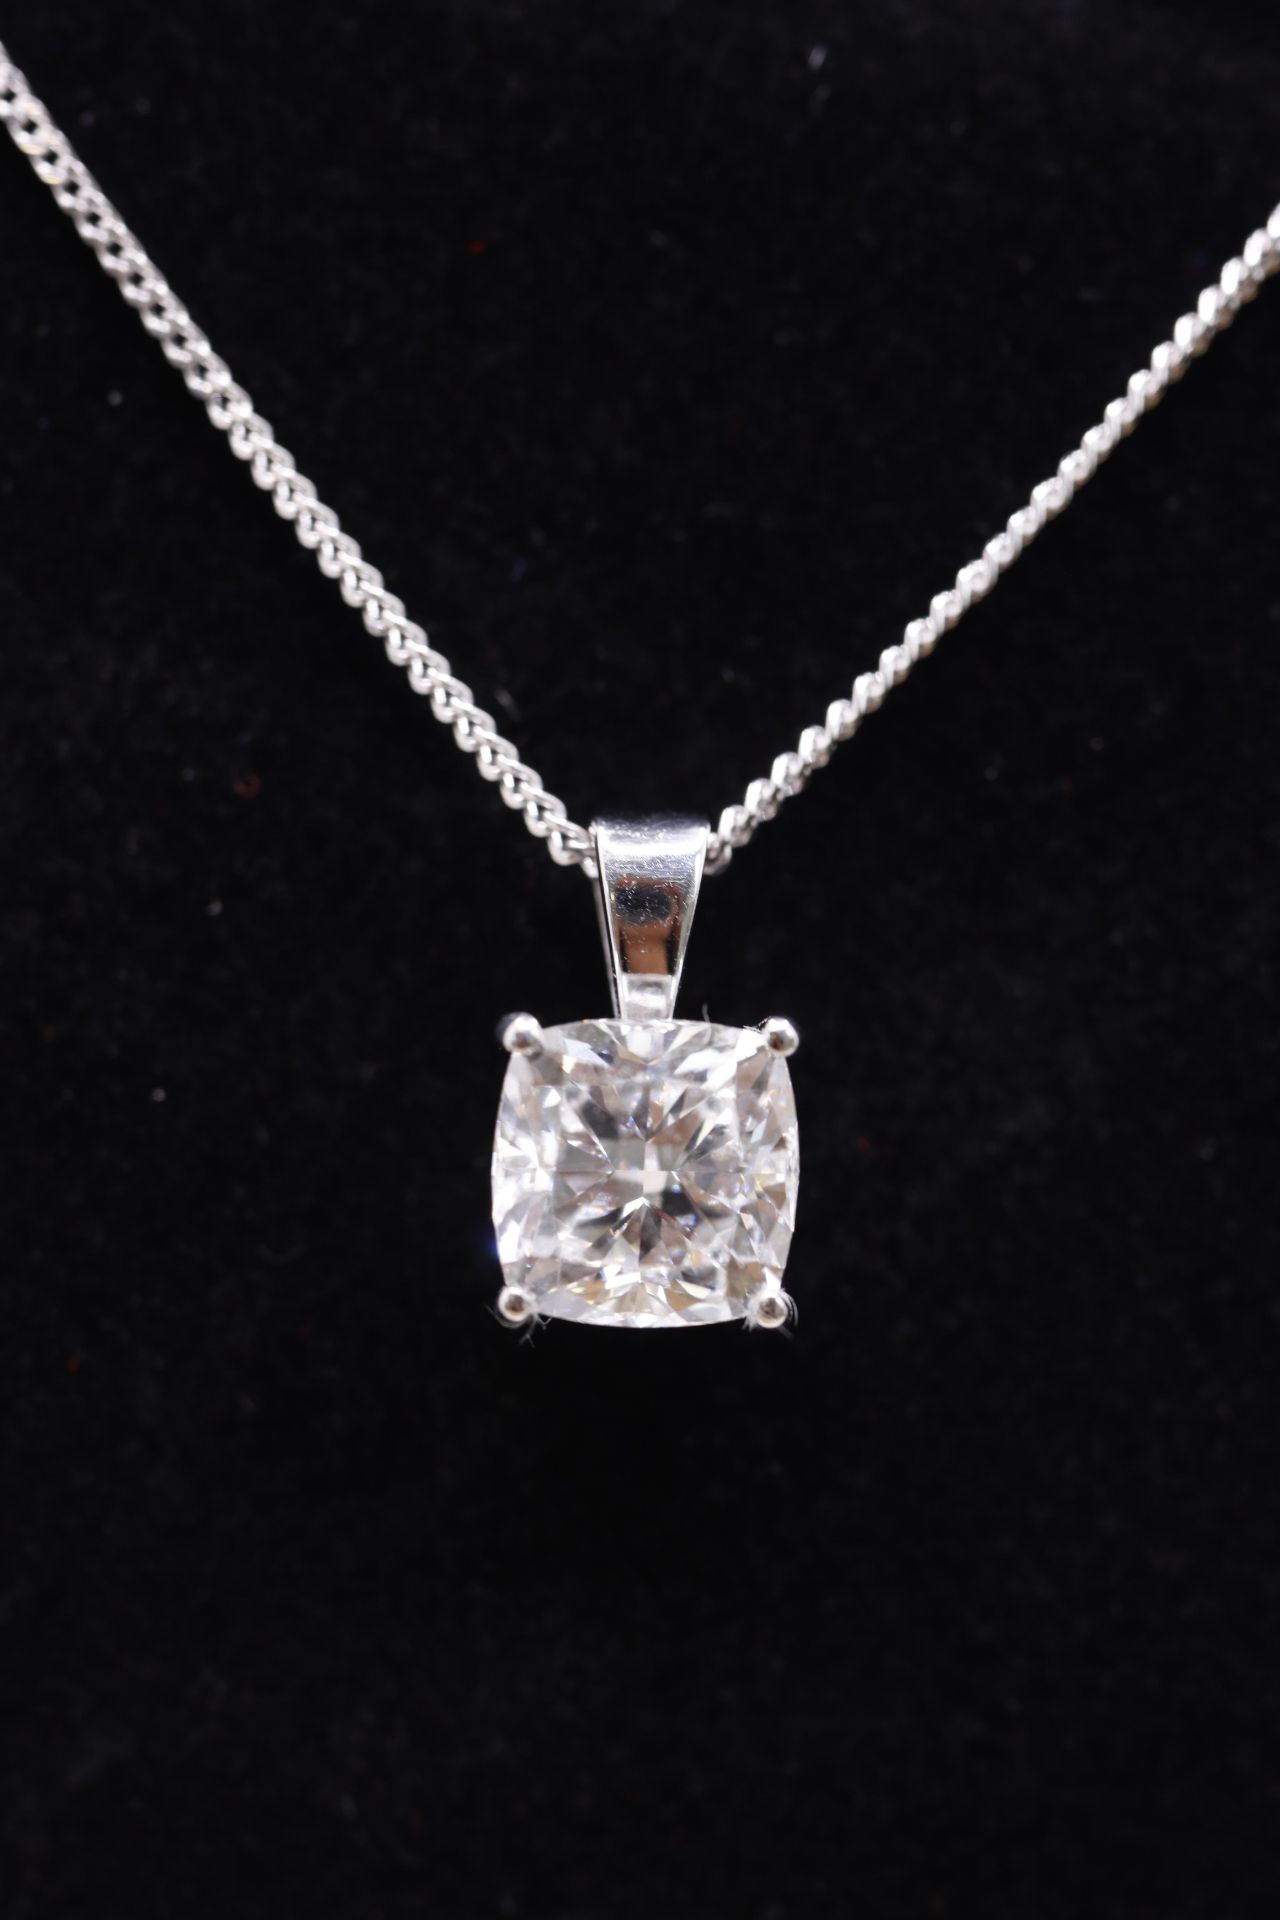 Cushion Cut Diamond 1.50 Carat D Colour VVS2 Clarity -Necklace Pendant -18kt White Gold -IGI